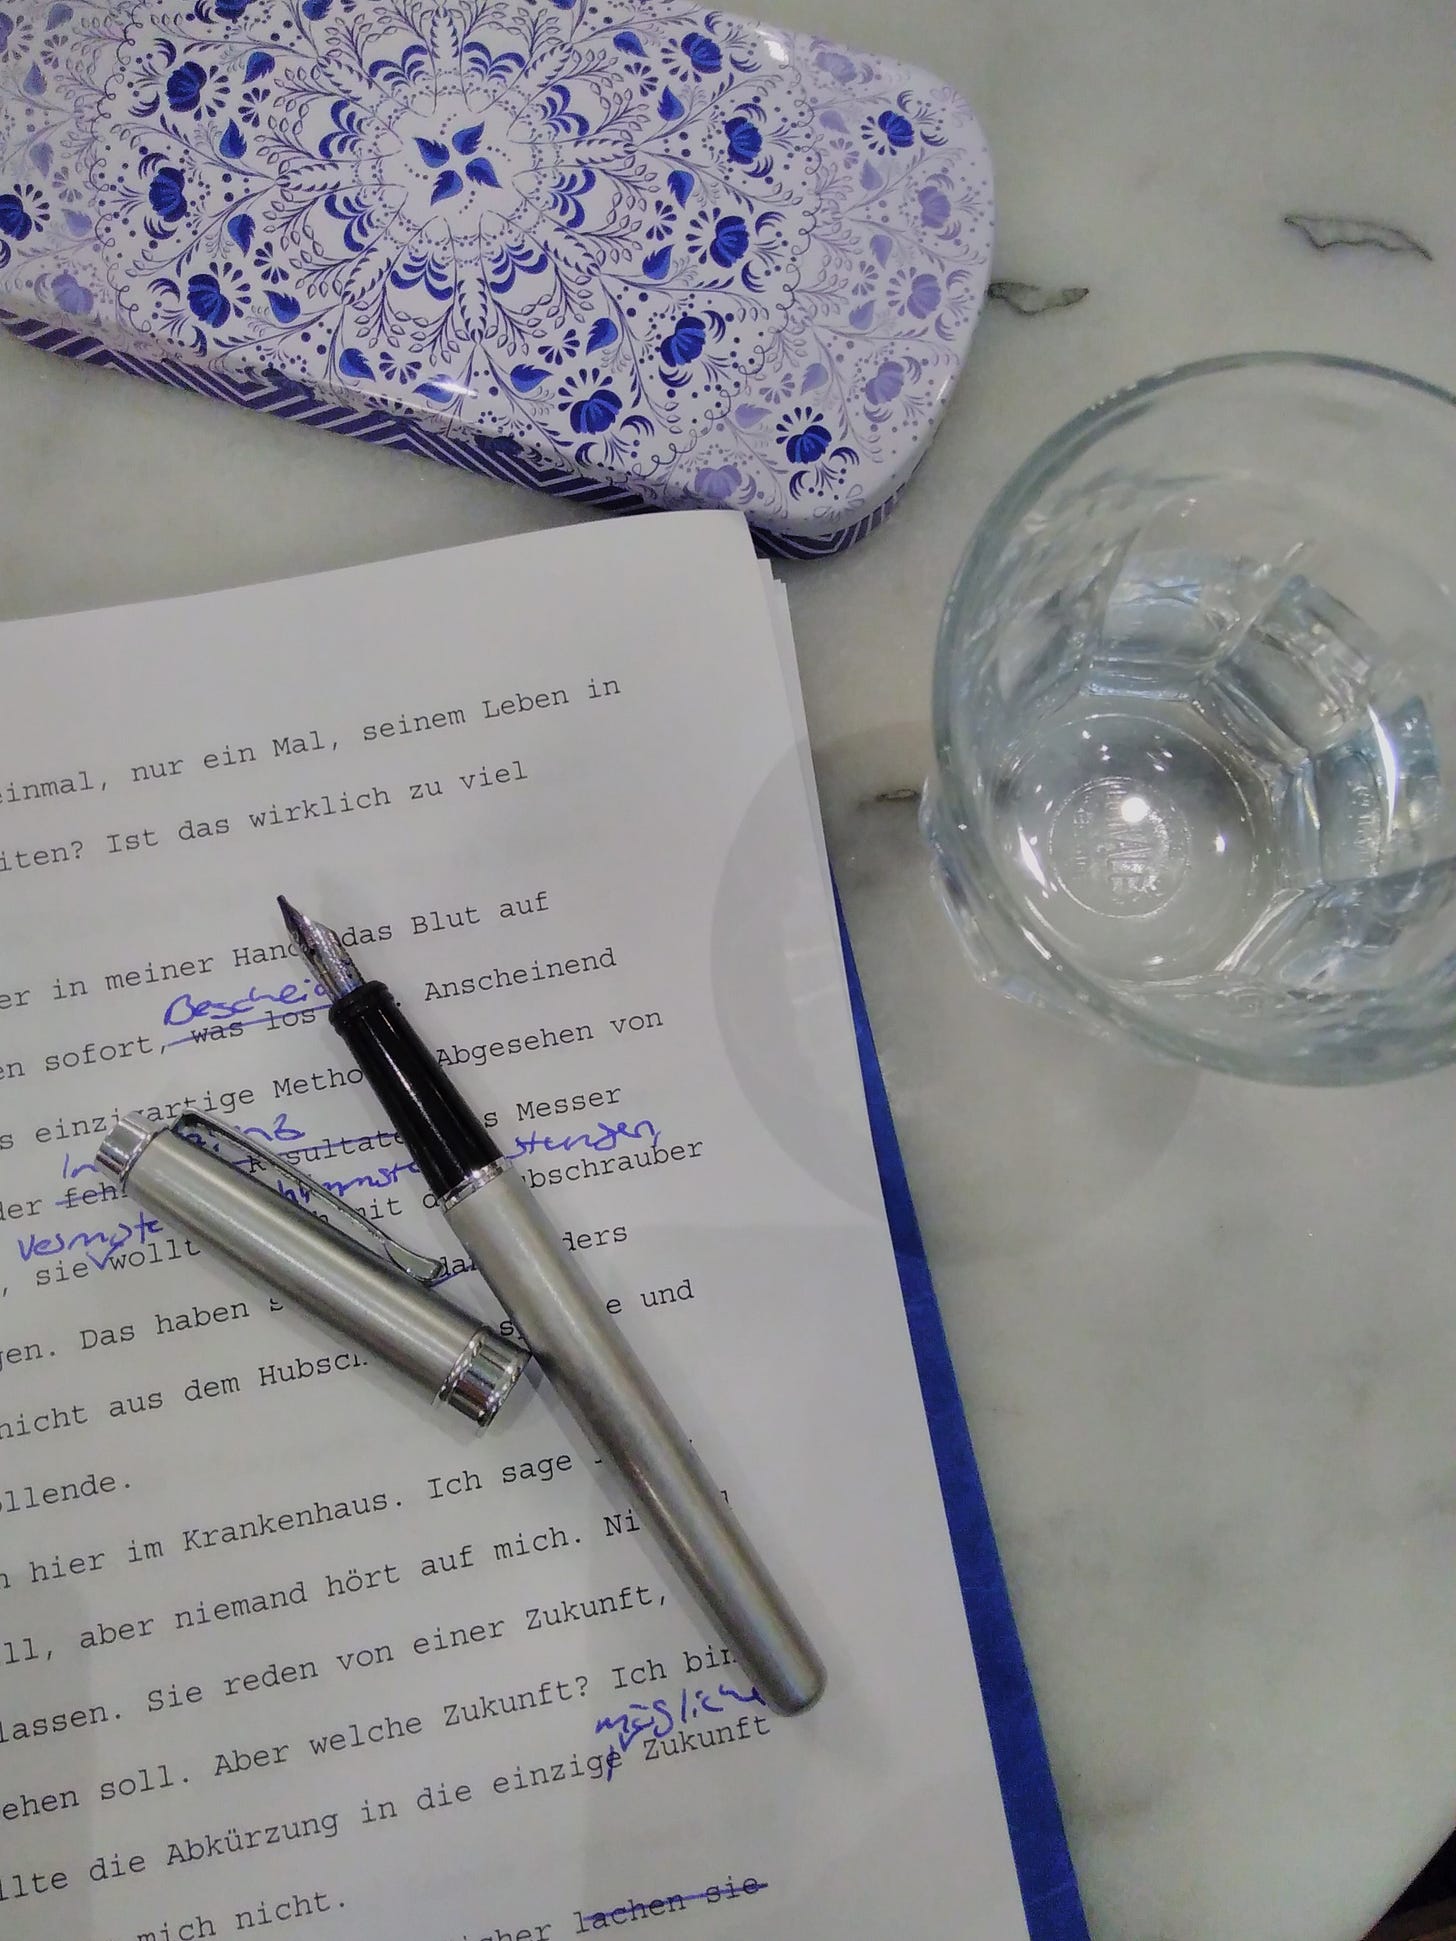 Ausgedruckter Text mit Korrekturen, darauf liegt ein silberner Füller, daneben ein leeres Glas und ein Federmäppchen aus Blech mit blau-weißem Muster. Die Tischplatte ist aus Marmor.